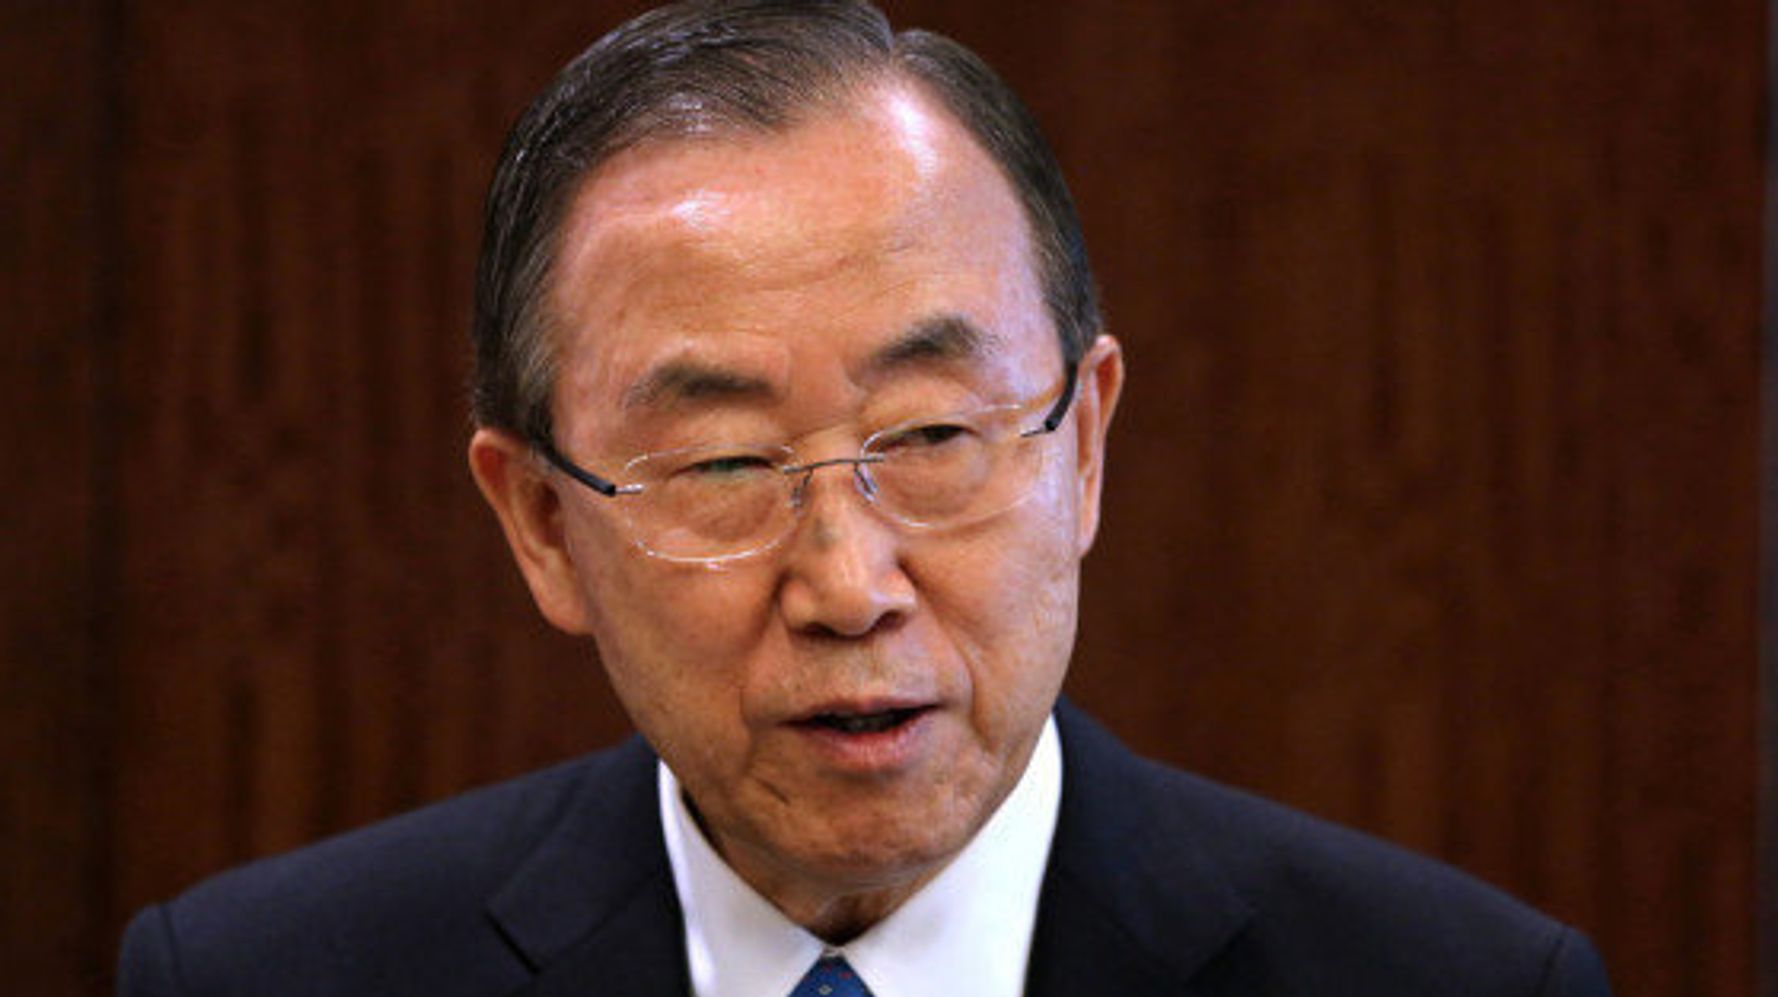 国連事務総長・潘基文氏「正しい歴史認識を」発言に「中立性欠ける